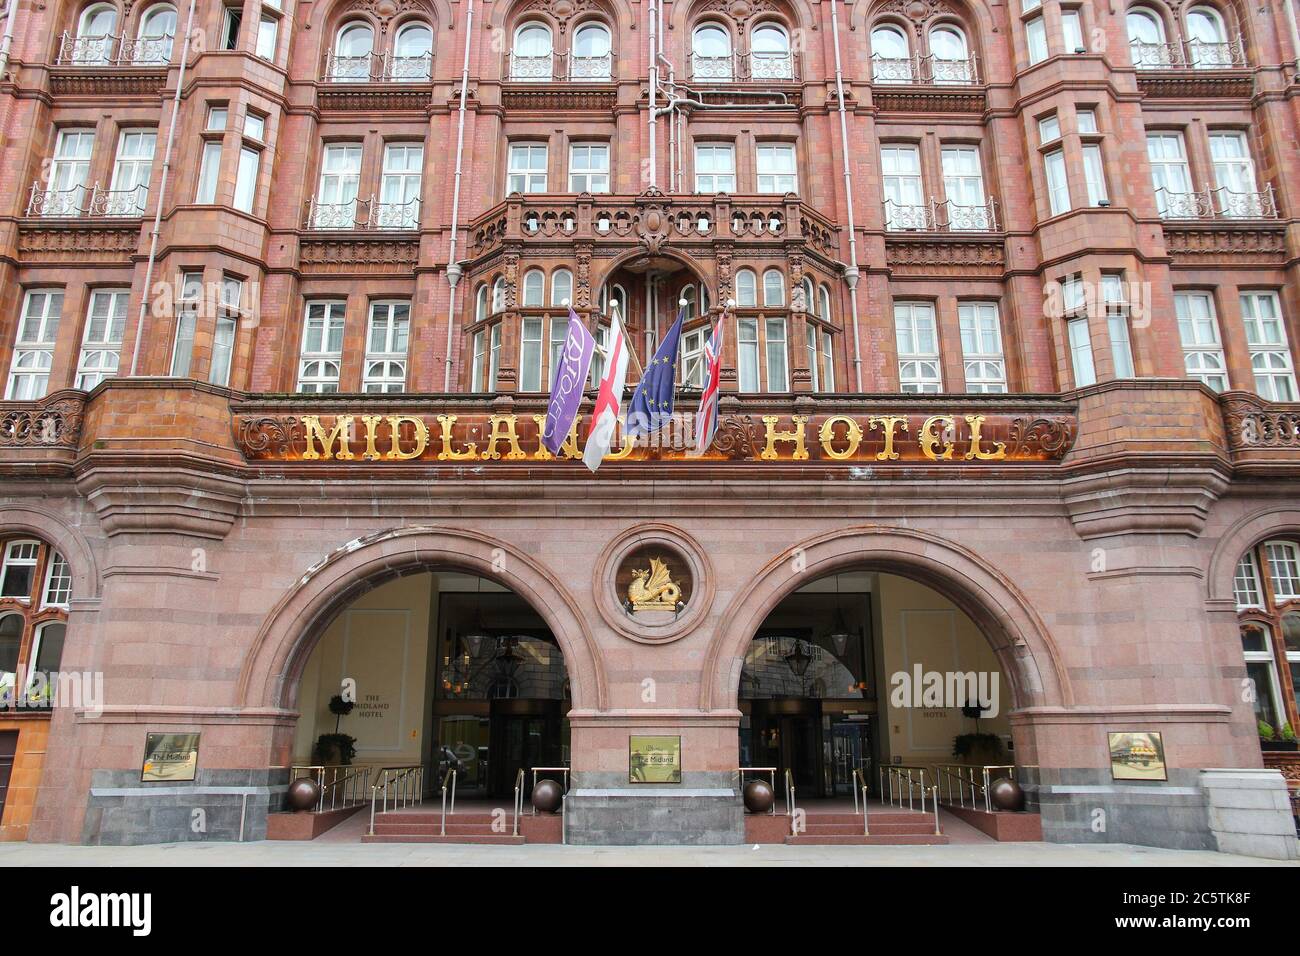 MANCHESTER, Reino Unido - 21 DE ABRIL de 2013: Hotel histórico Midland en Manchester, Reino Unido. El hotel fue inaugurado en 1903 y diseñado por Charles Trubshaw. Foto de stock